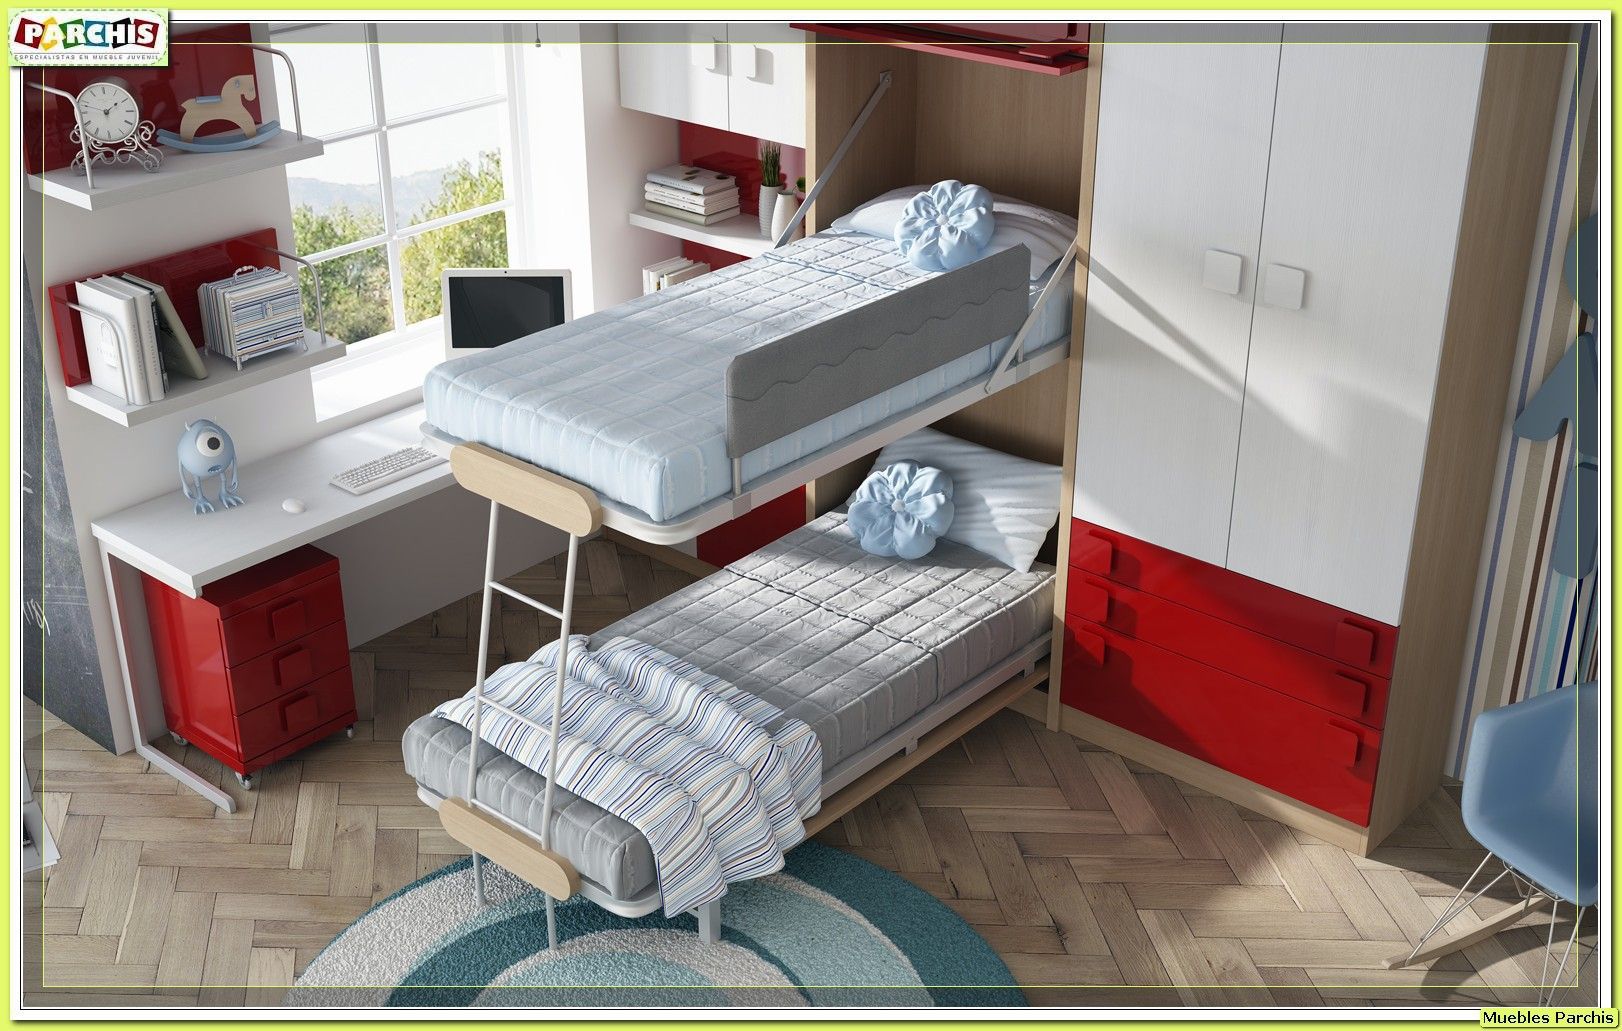 cama vertical convertible Muebles Parchis. Dormitorios Juveniles. Dormitorios modernos Camas y cabeceras